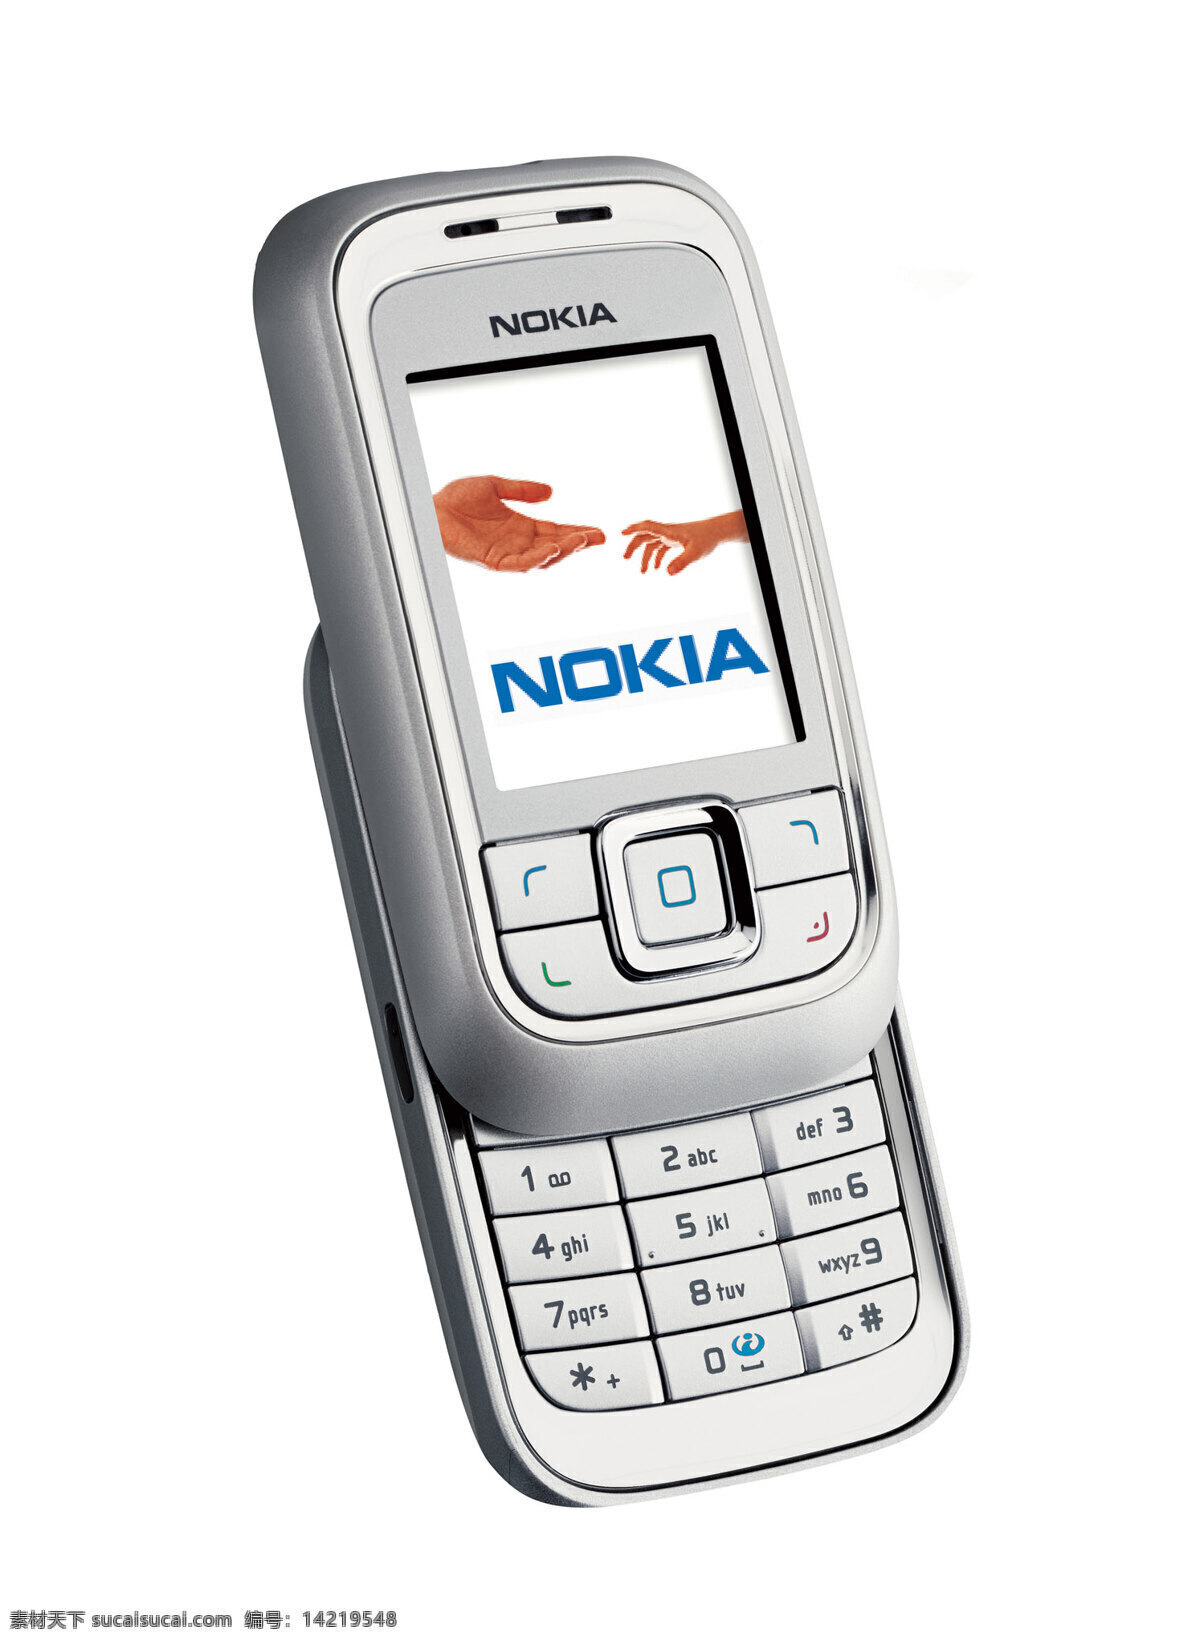 诺基亚 手机 nokia 智能手机 品牌手机 直板手机 彩屏手机 风景 生活 旅游餐饮